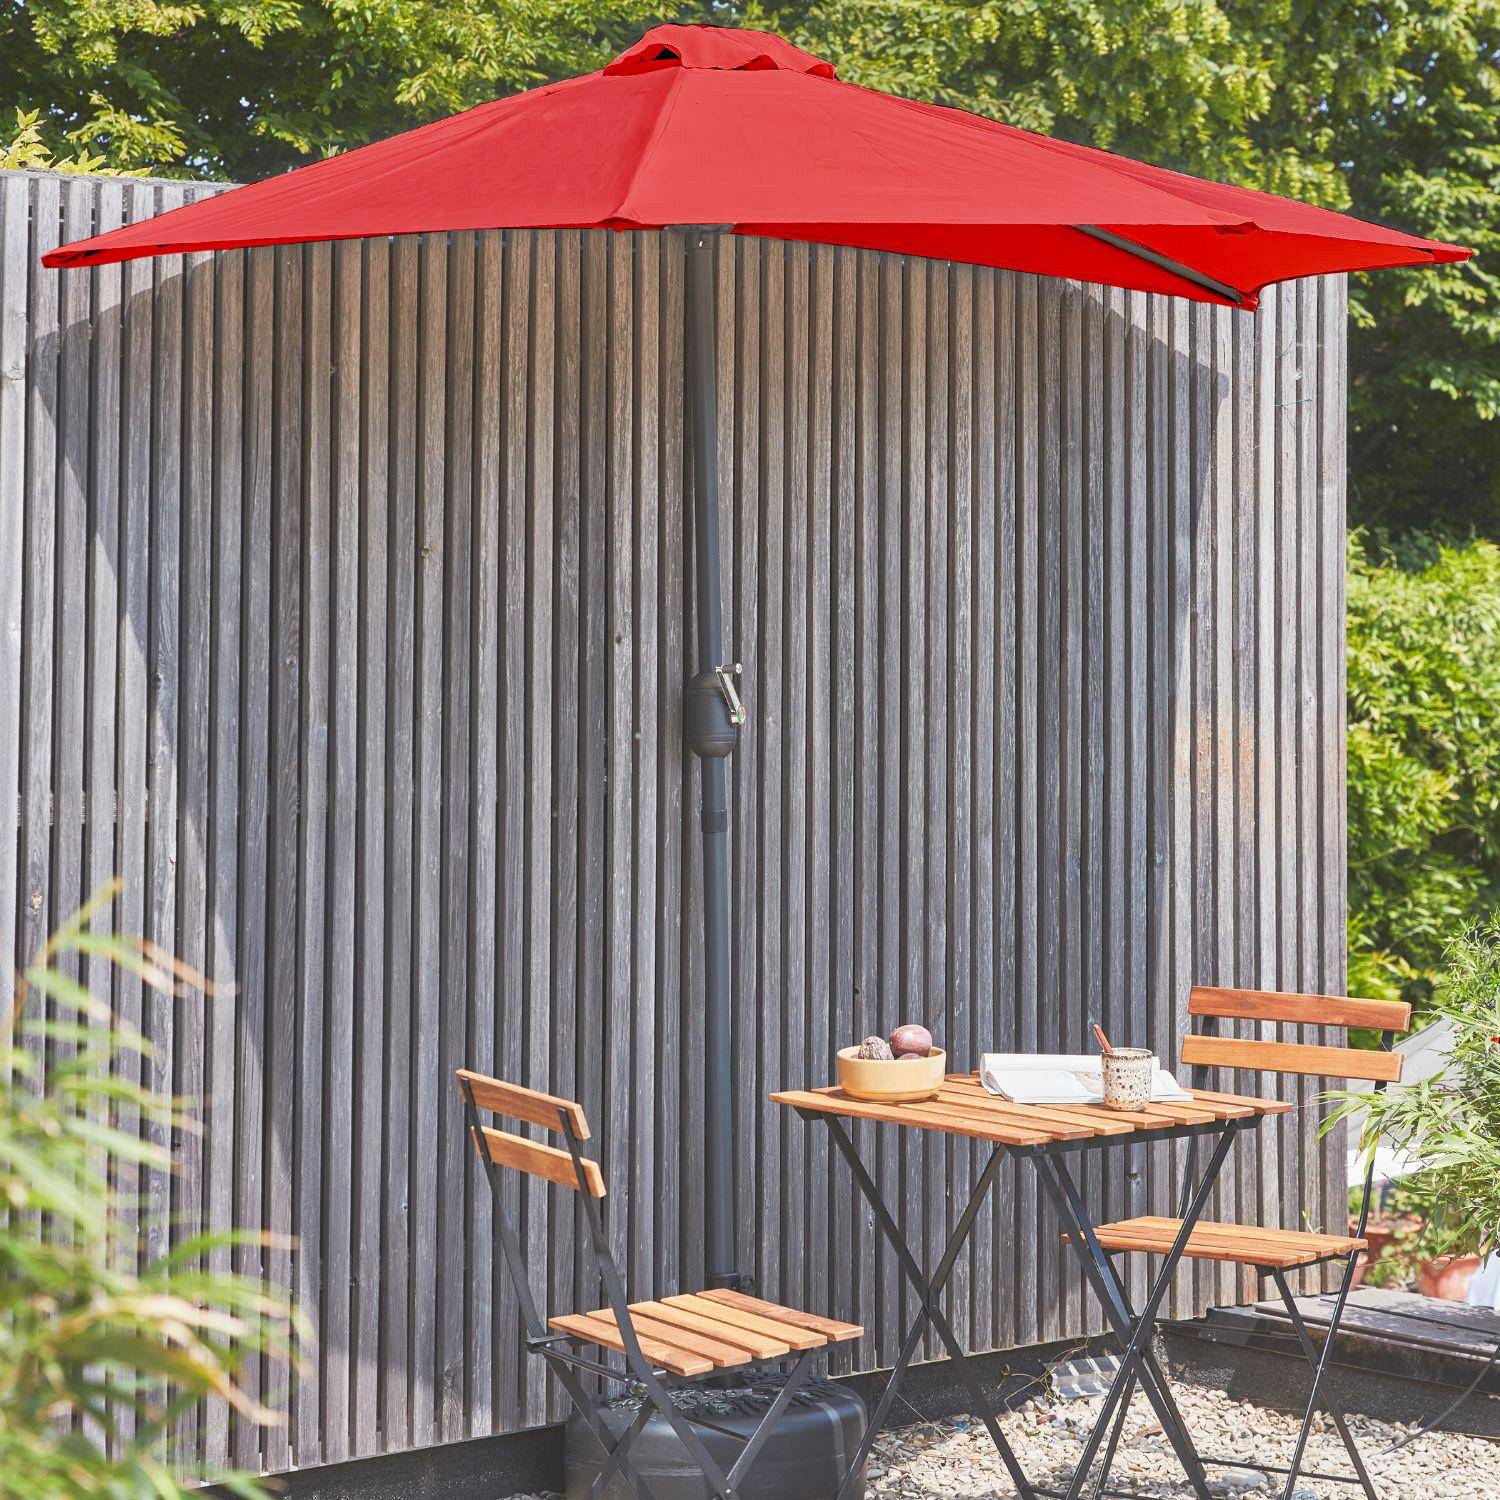  Parasol para balcón Ø250cm  – CALVI – Pequeño parasol recto, mástil en aluminio con manivela, tela color rojo,sweeek,Photo1